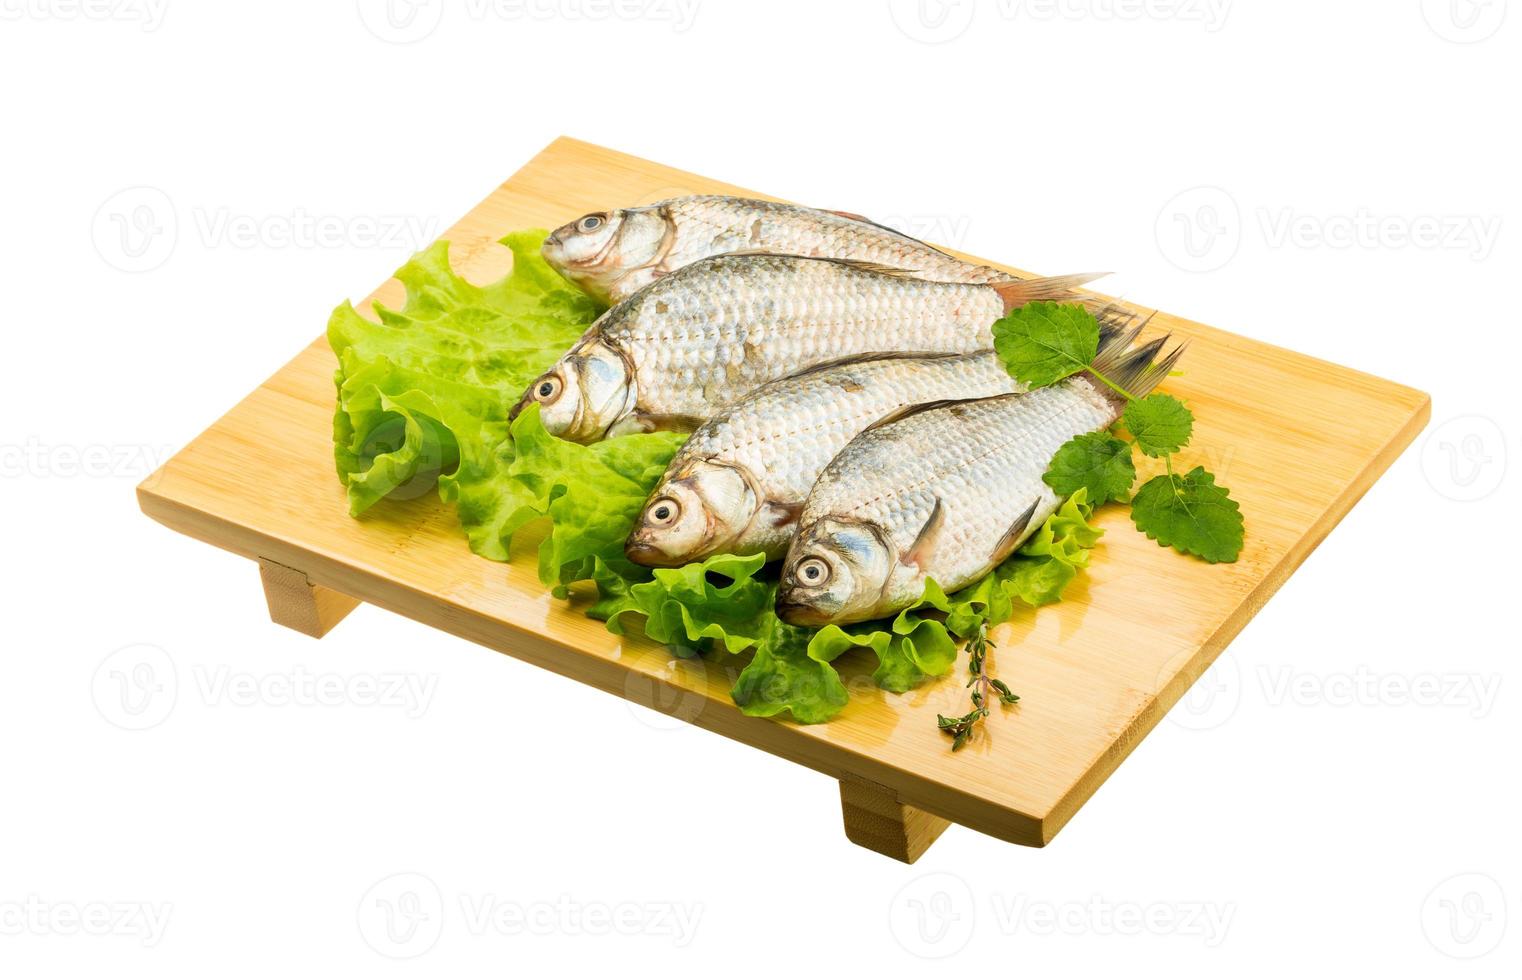 poisson carassin sur planche de bois et fond blanc photo